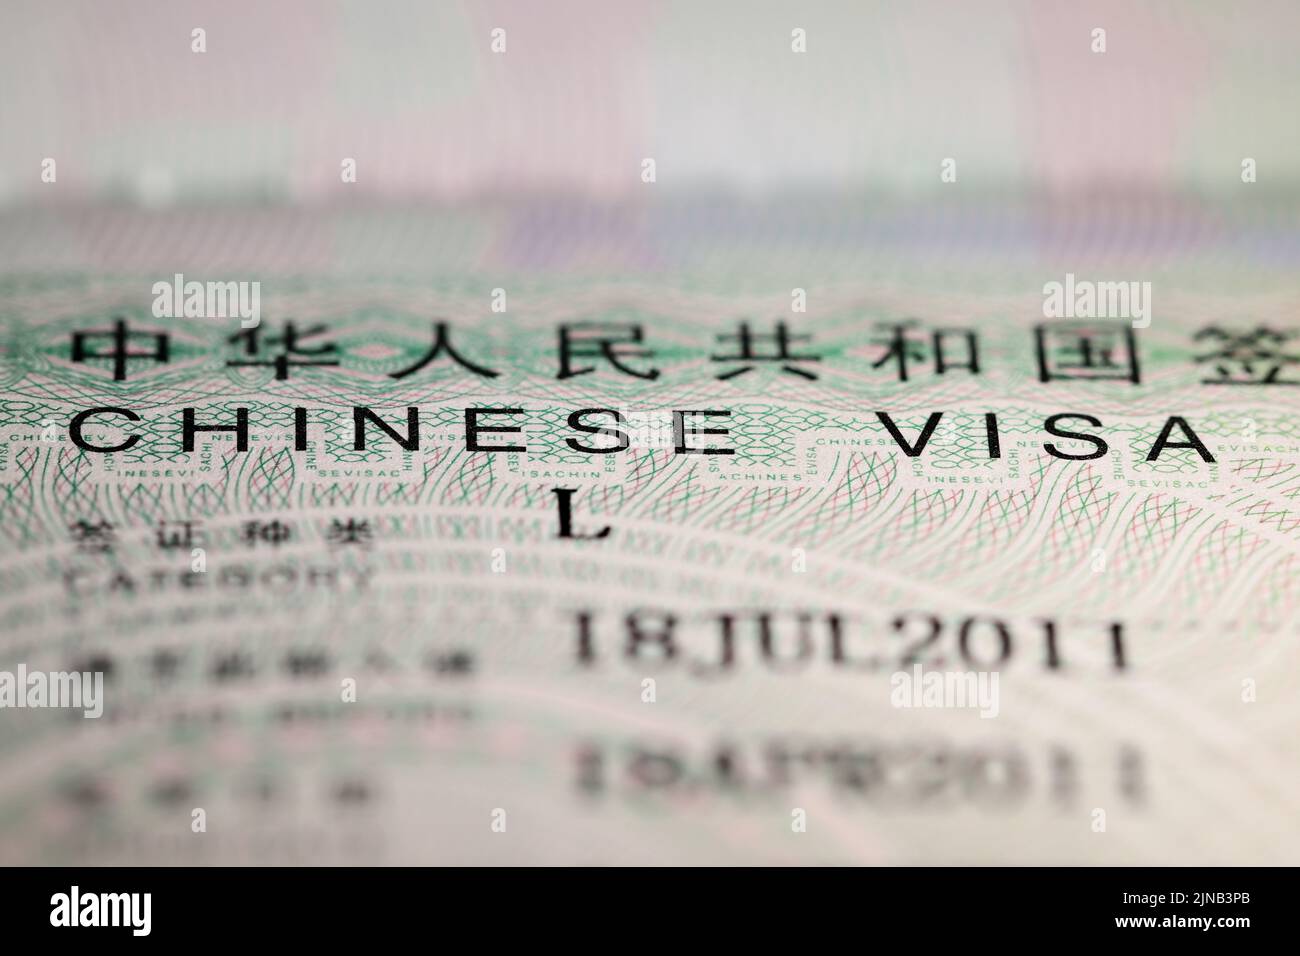 Chinese visa sticker in passport Stock Photo